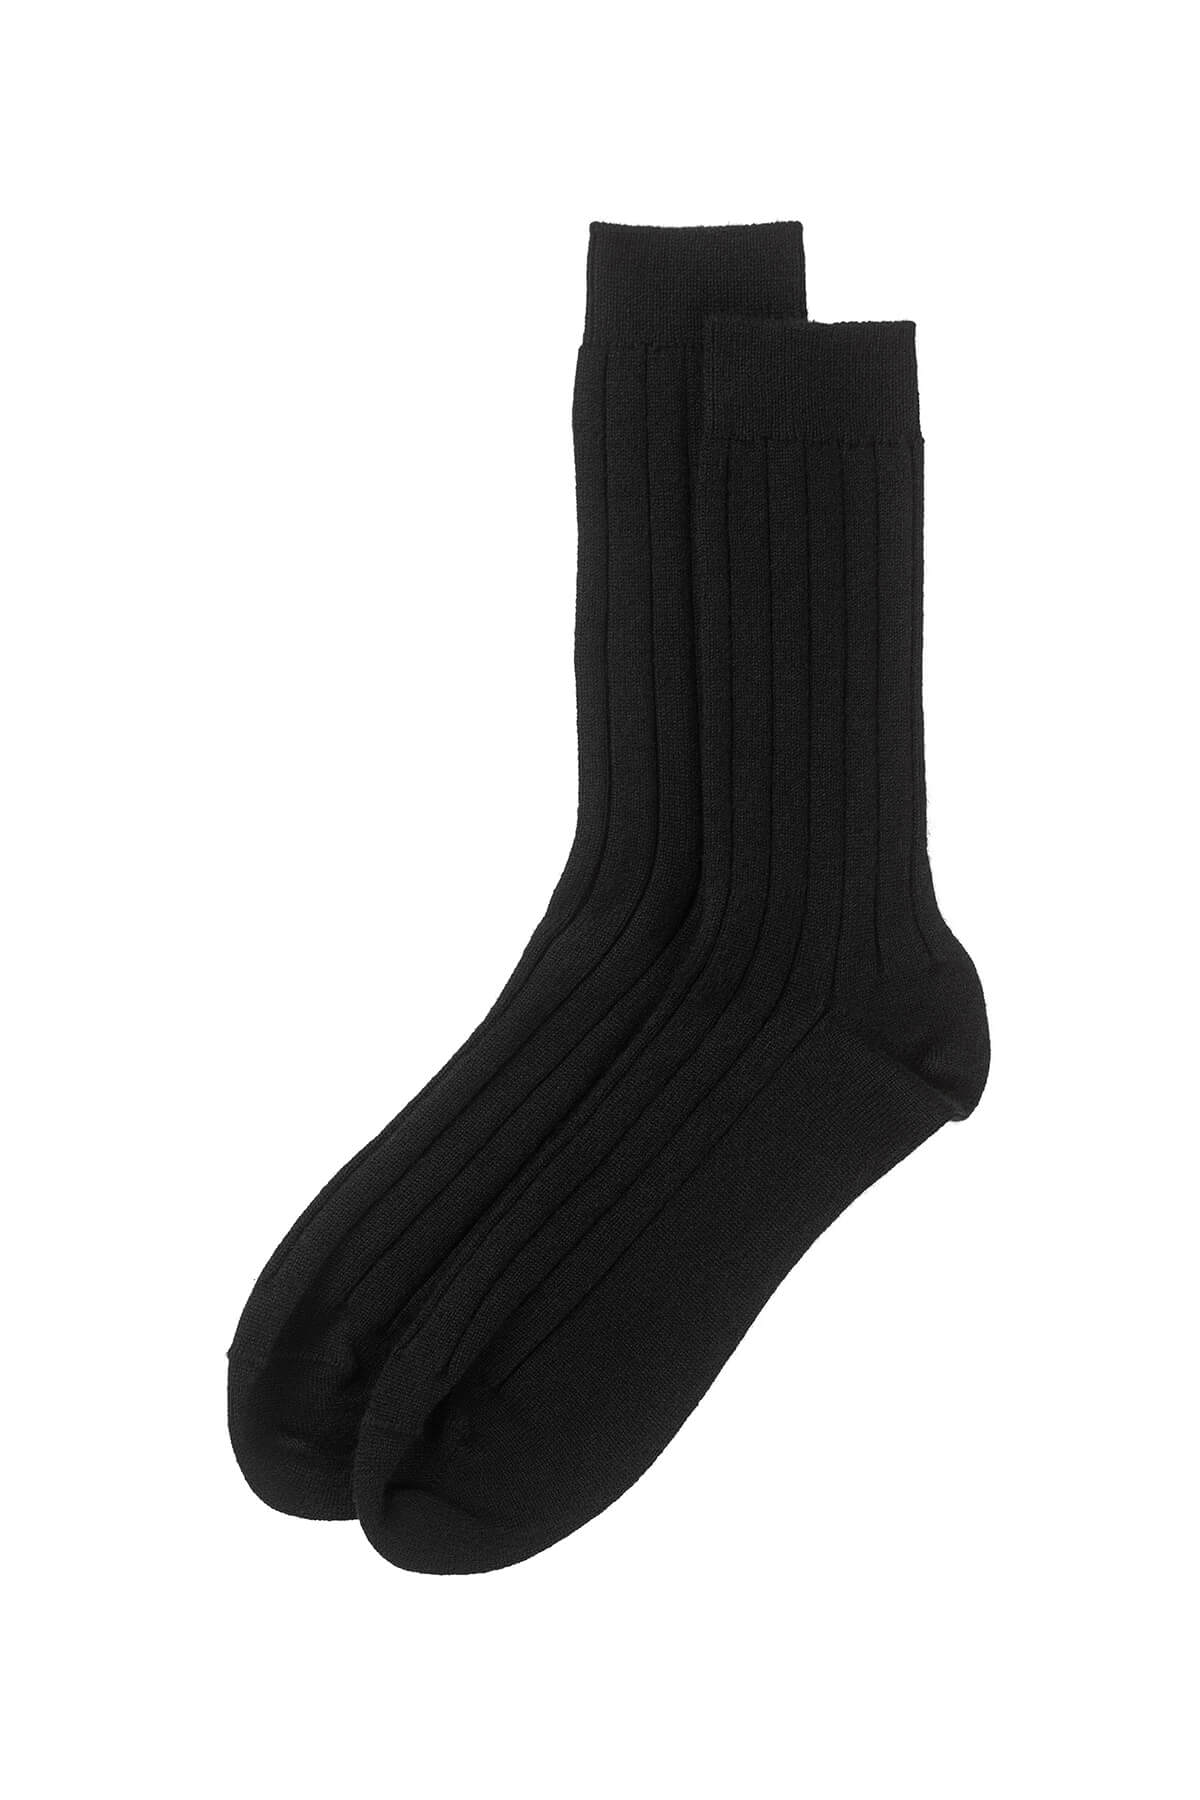 Johnstons of Elgin's Black Men's Cashmere Socks 365GIFTSET2F